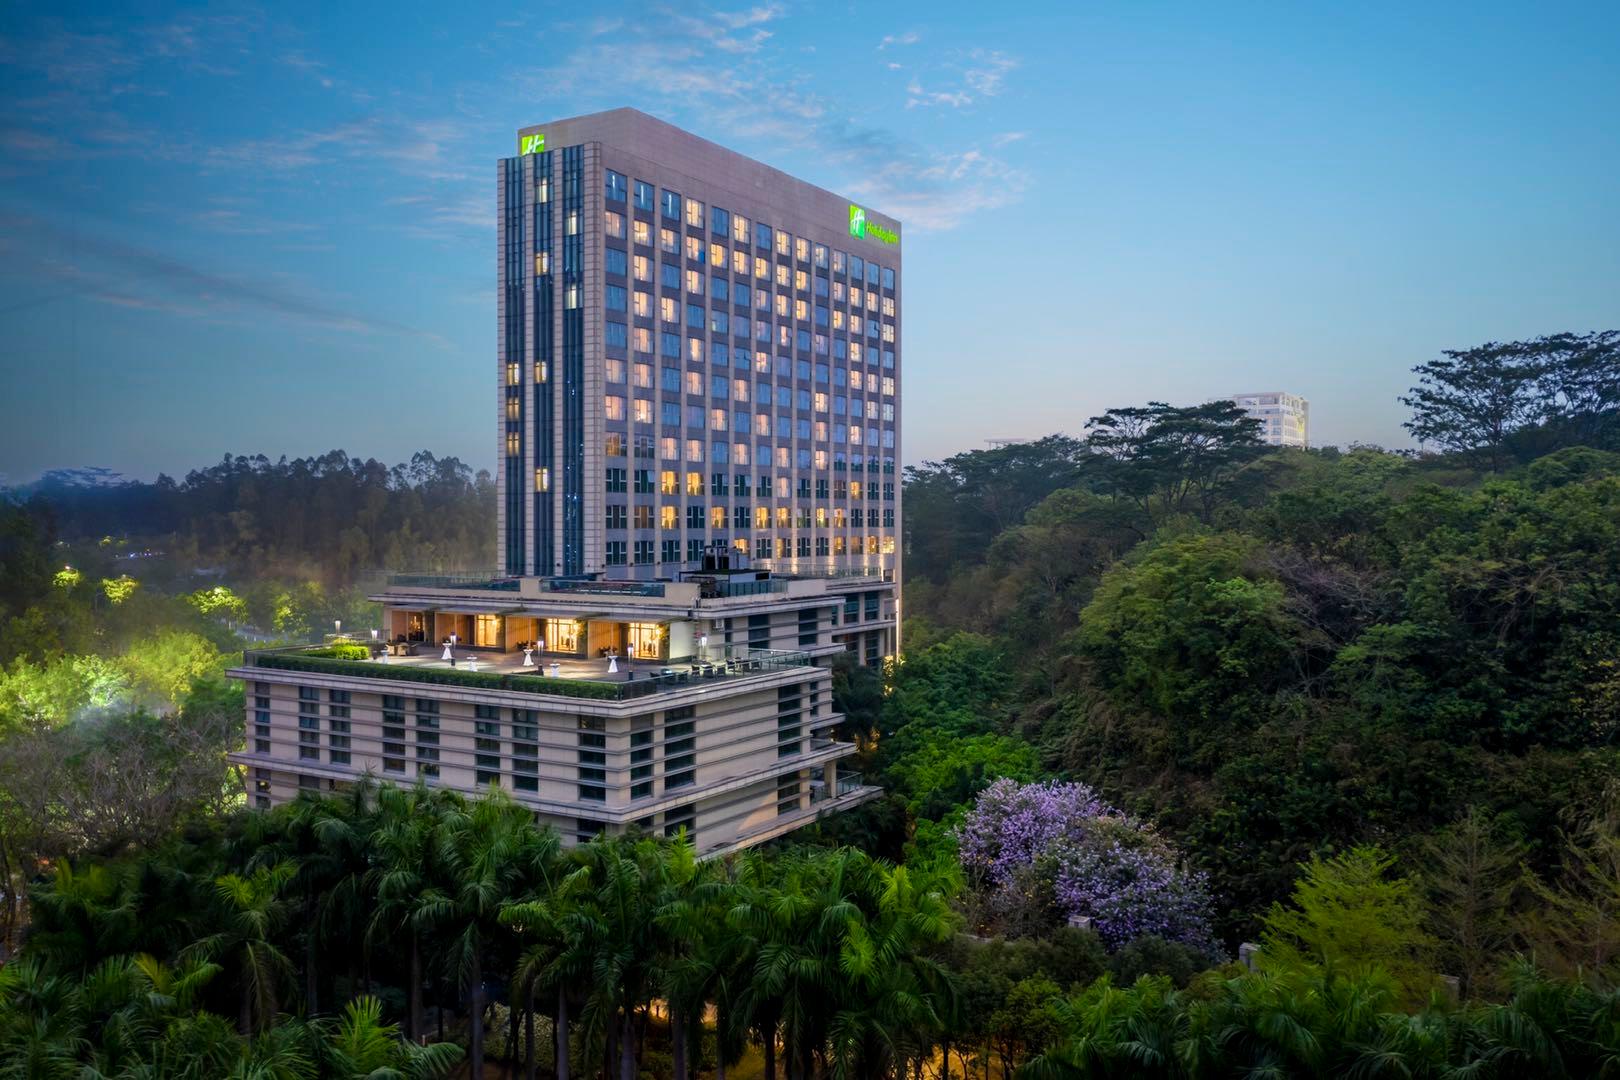 广州五星级酒店最大容纳320人的会议场地|广州保利假日酒店的价格与联系方式